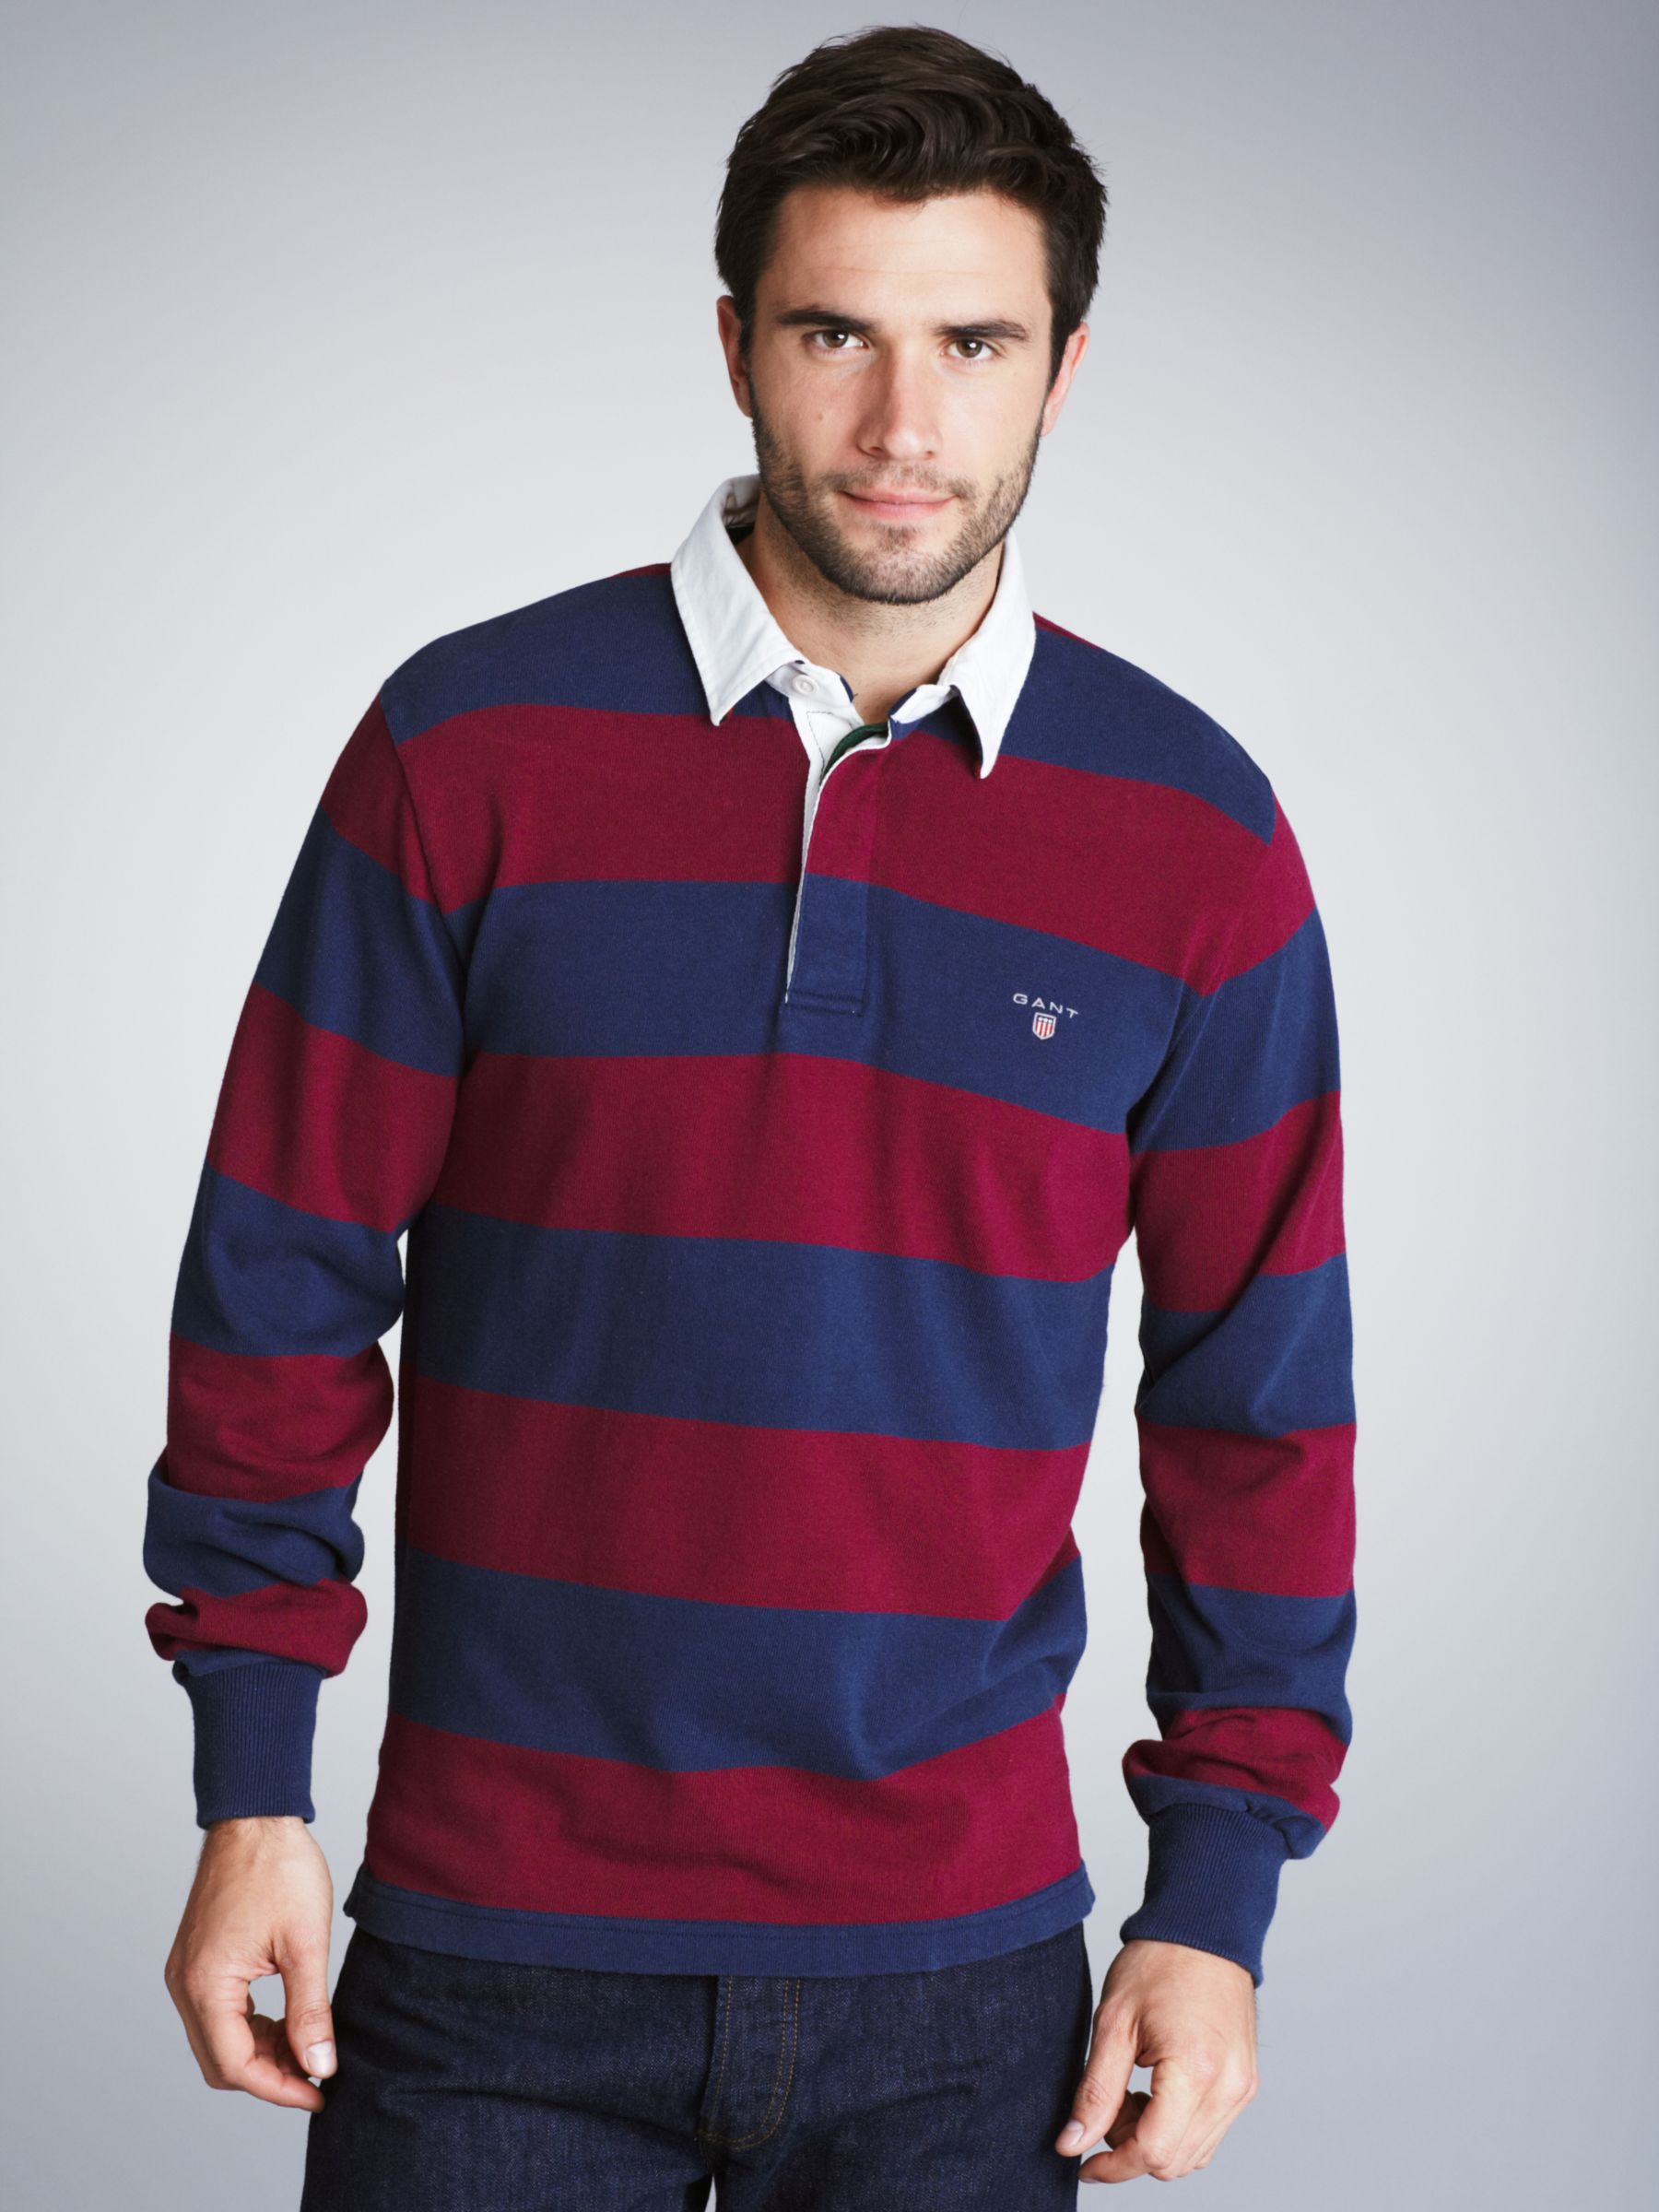 Gant Bar Stripe Rugby Shirt, Wine/Navy